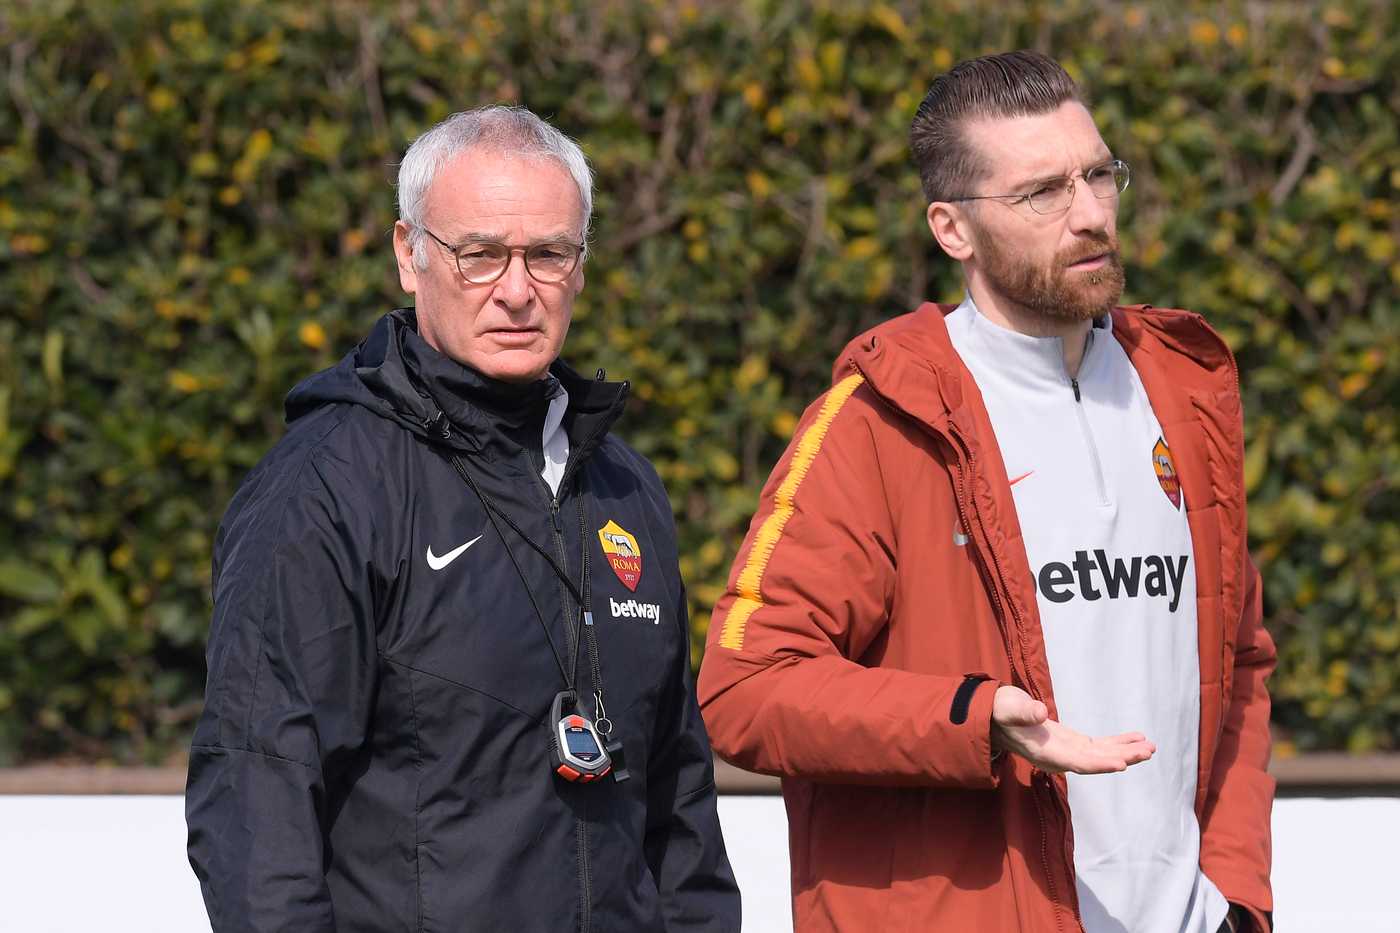 Roma, parla il nuovo allenatore Claudio Ranieri: "rispondere sul campo"